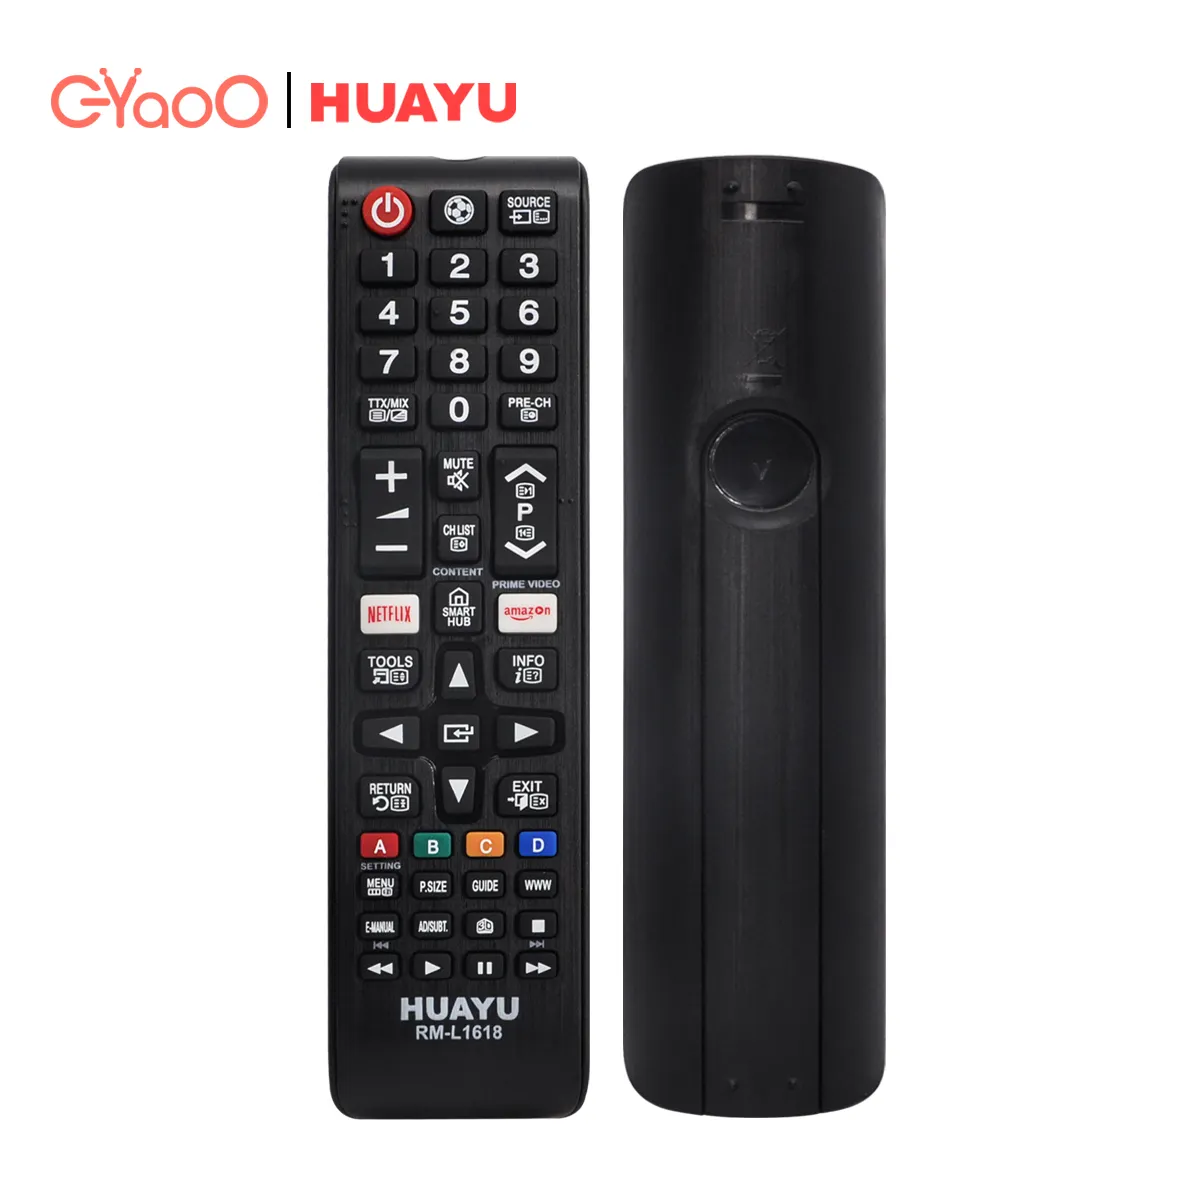 HUAYU RM-L1618-mando a distancia Universal para TV, mando a distancia de una sola marca para TV LCD, LED inteligente Samsung